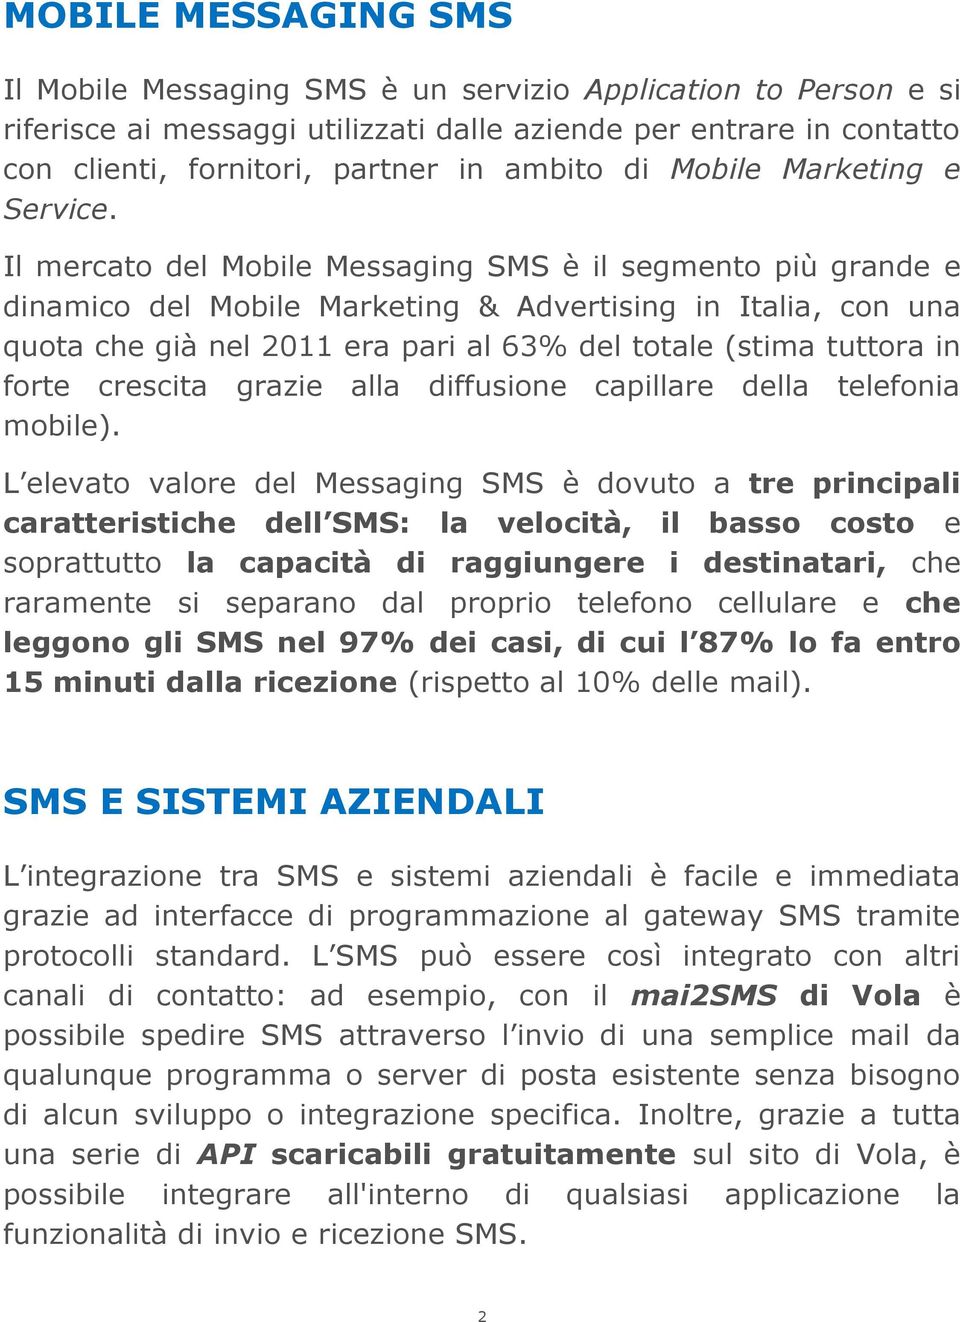 Il mercato del Mobile Messaging SMS è il segmento più grande e dinamico del Mobile Marketing & Advertising in Italia, con una quota che già nel 2011 era pari al 63% del totale (stima tuttora in forte